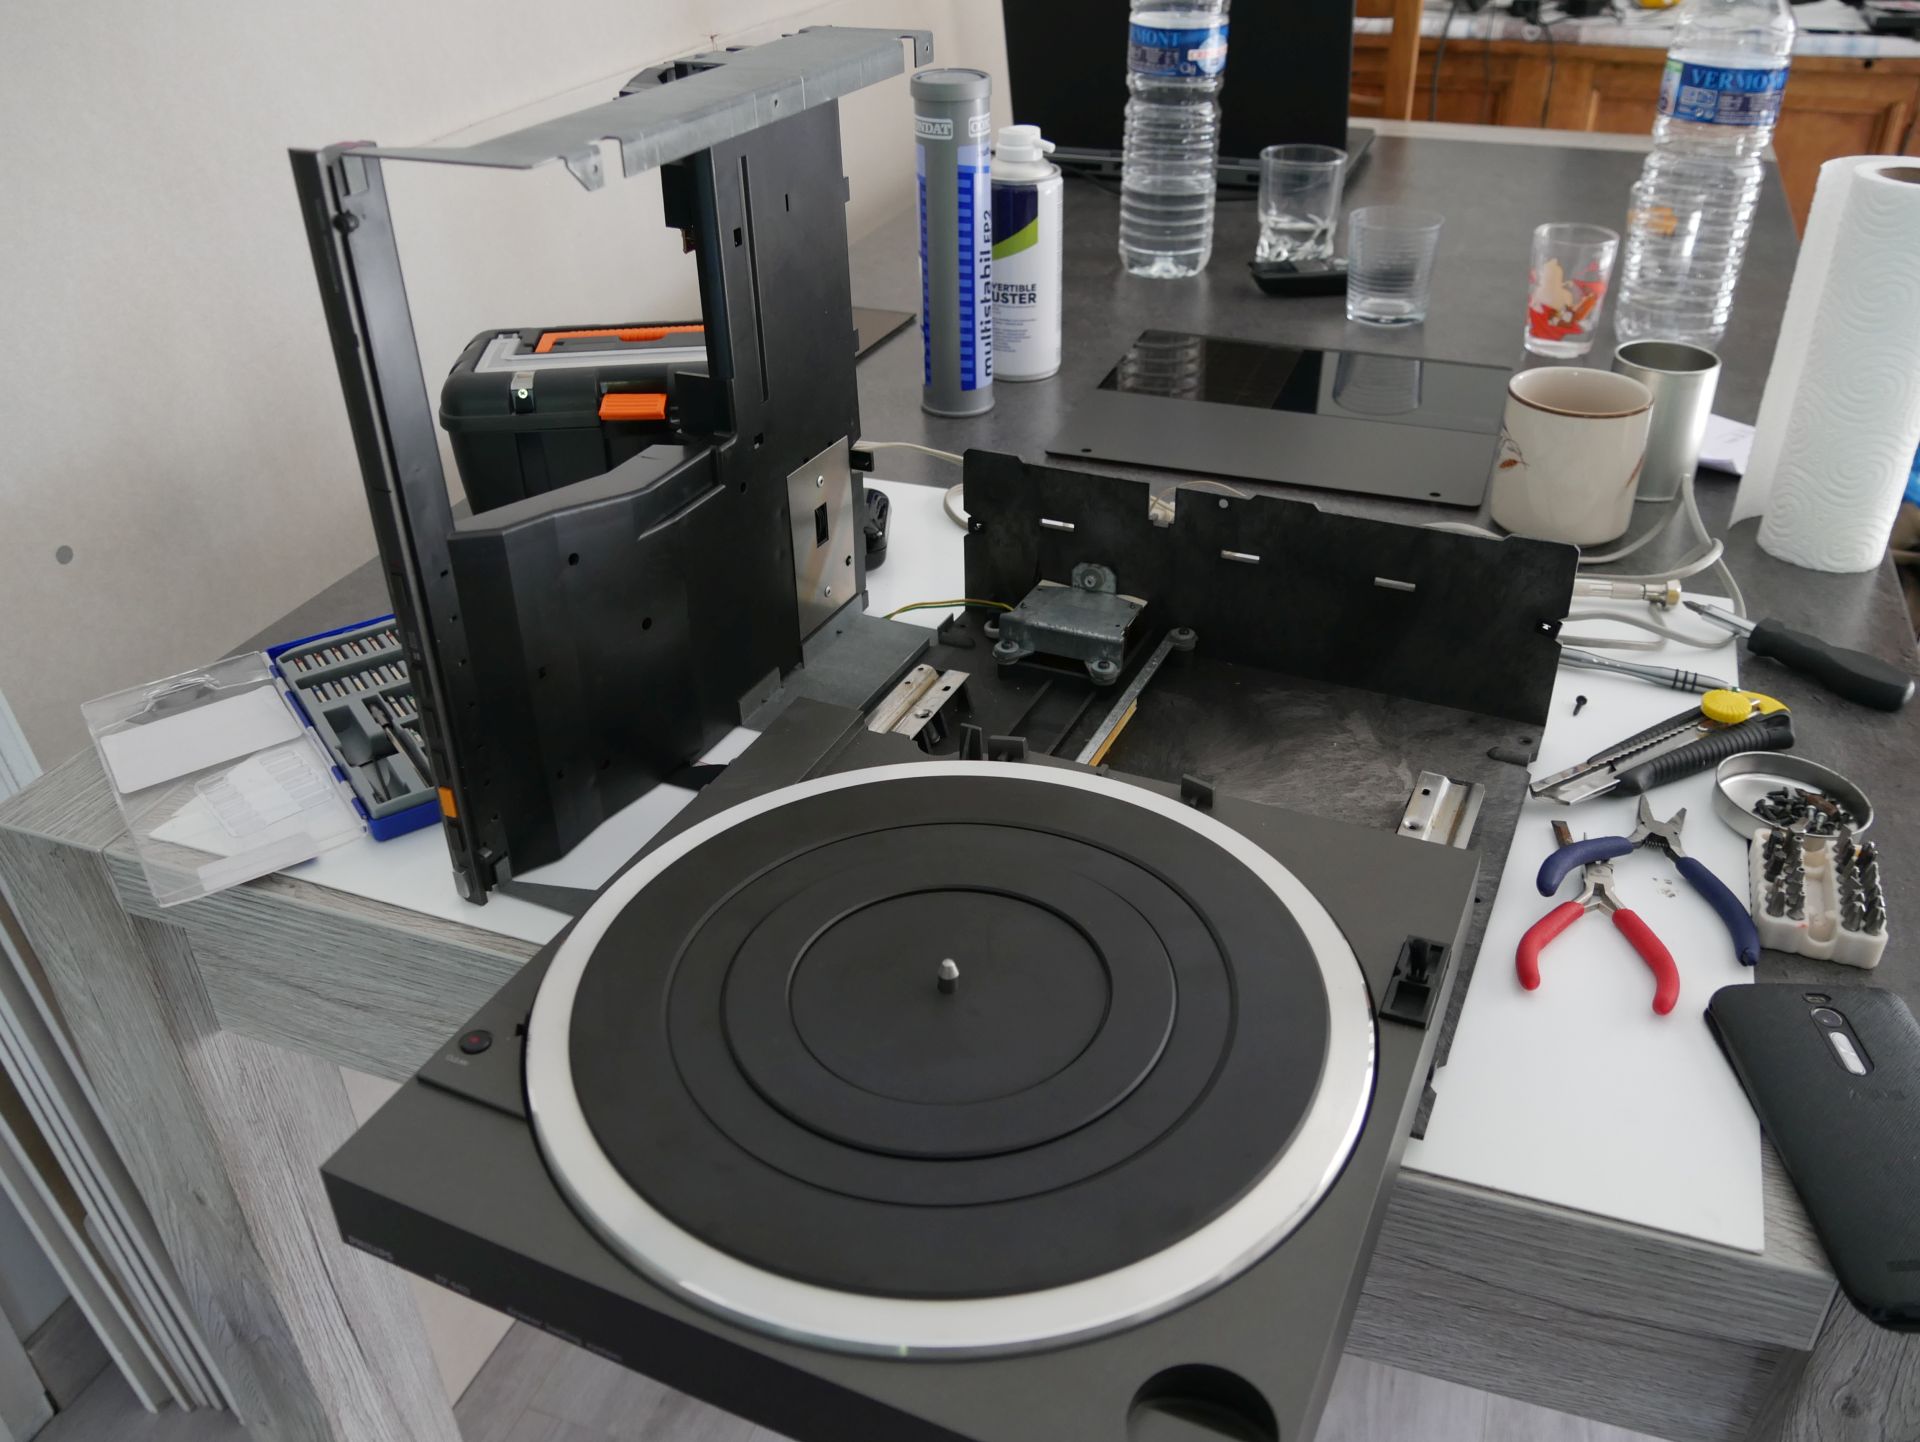 Présentation de la platine vinyle Technics SL-1500 C 